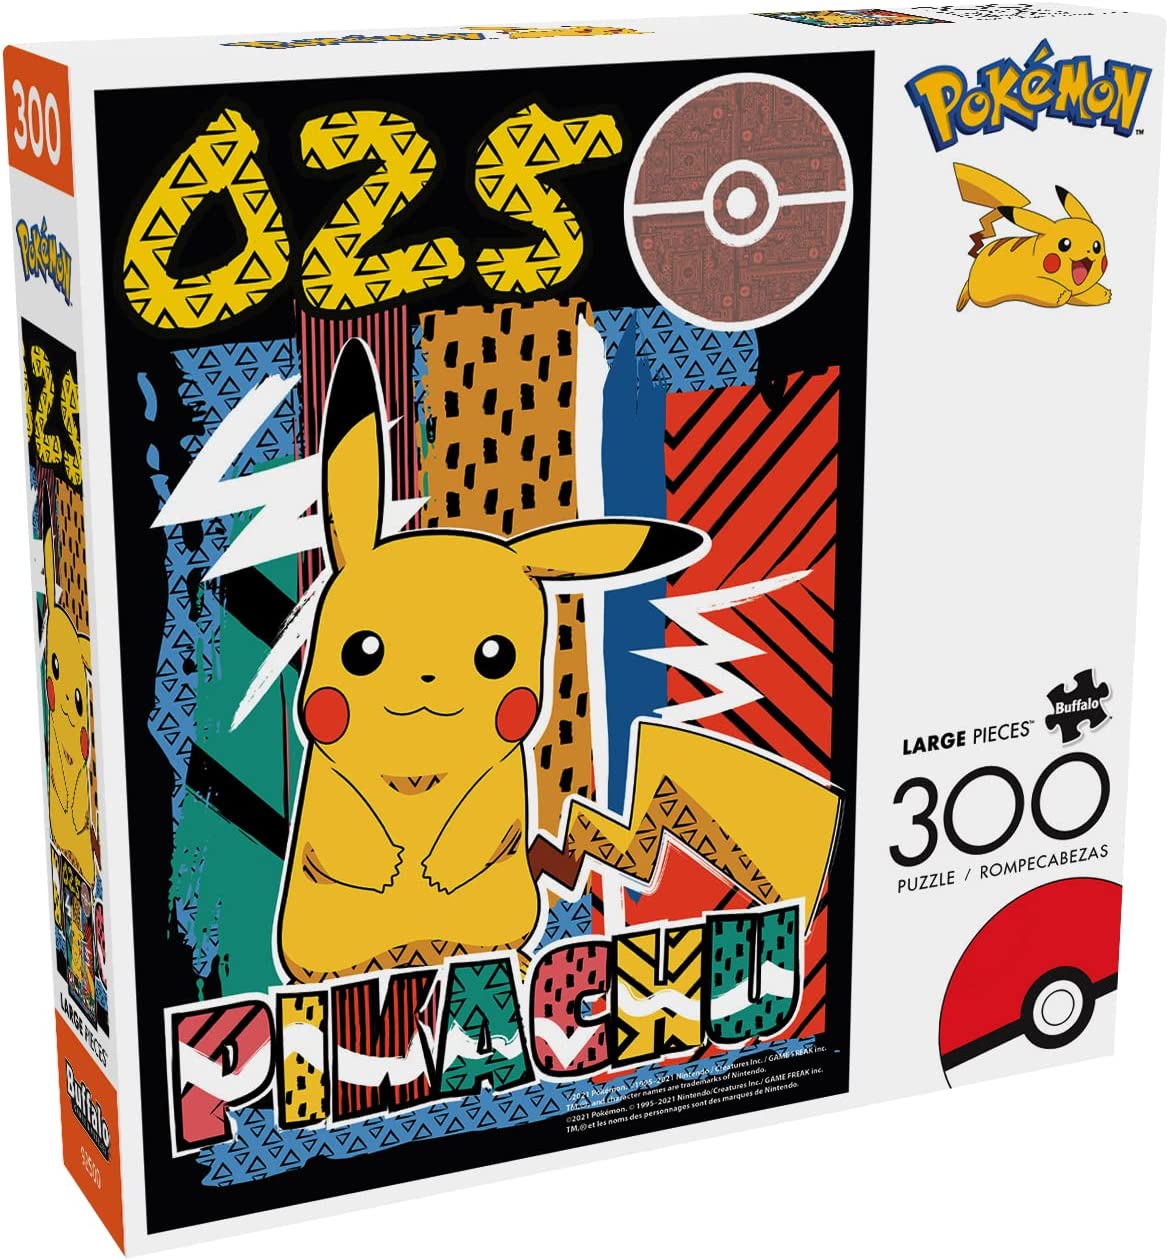 Puzzle 300 Piezas Grandes l Pokemon Pikachu 